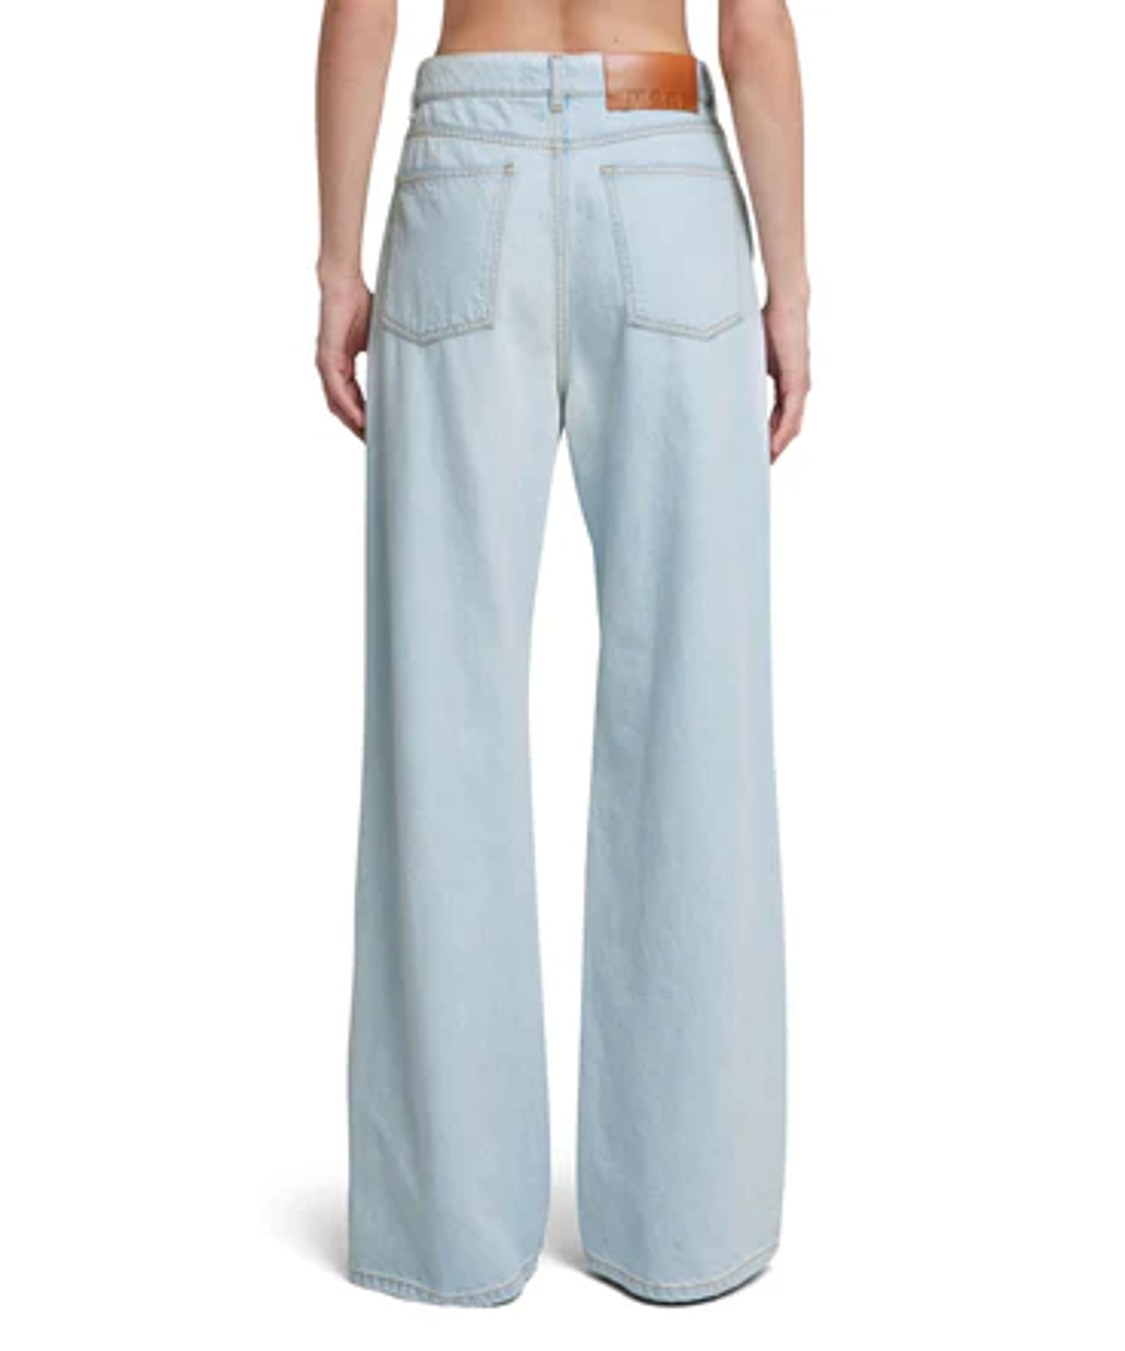 shop MSGM  Pantaloni: Pantaloni MSGM, jeans, gamba dritta, vita alta, 5 tasche, in denim chiaro.

Composizione: 100% cotone. number 2689